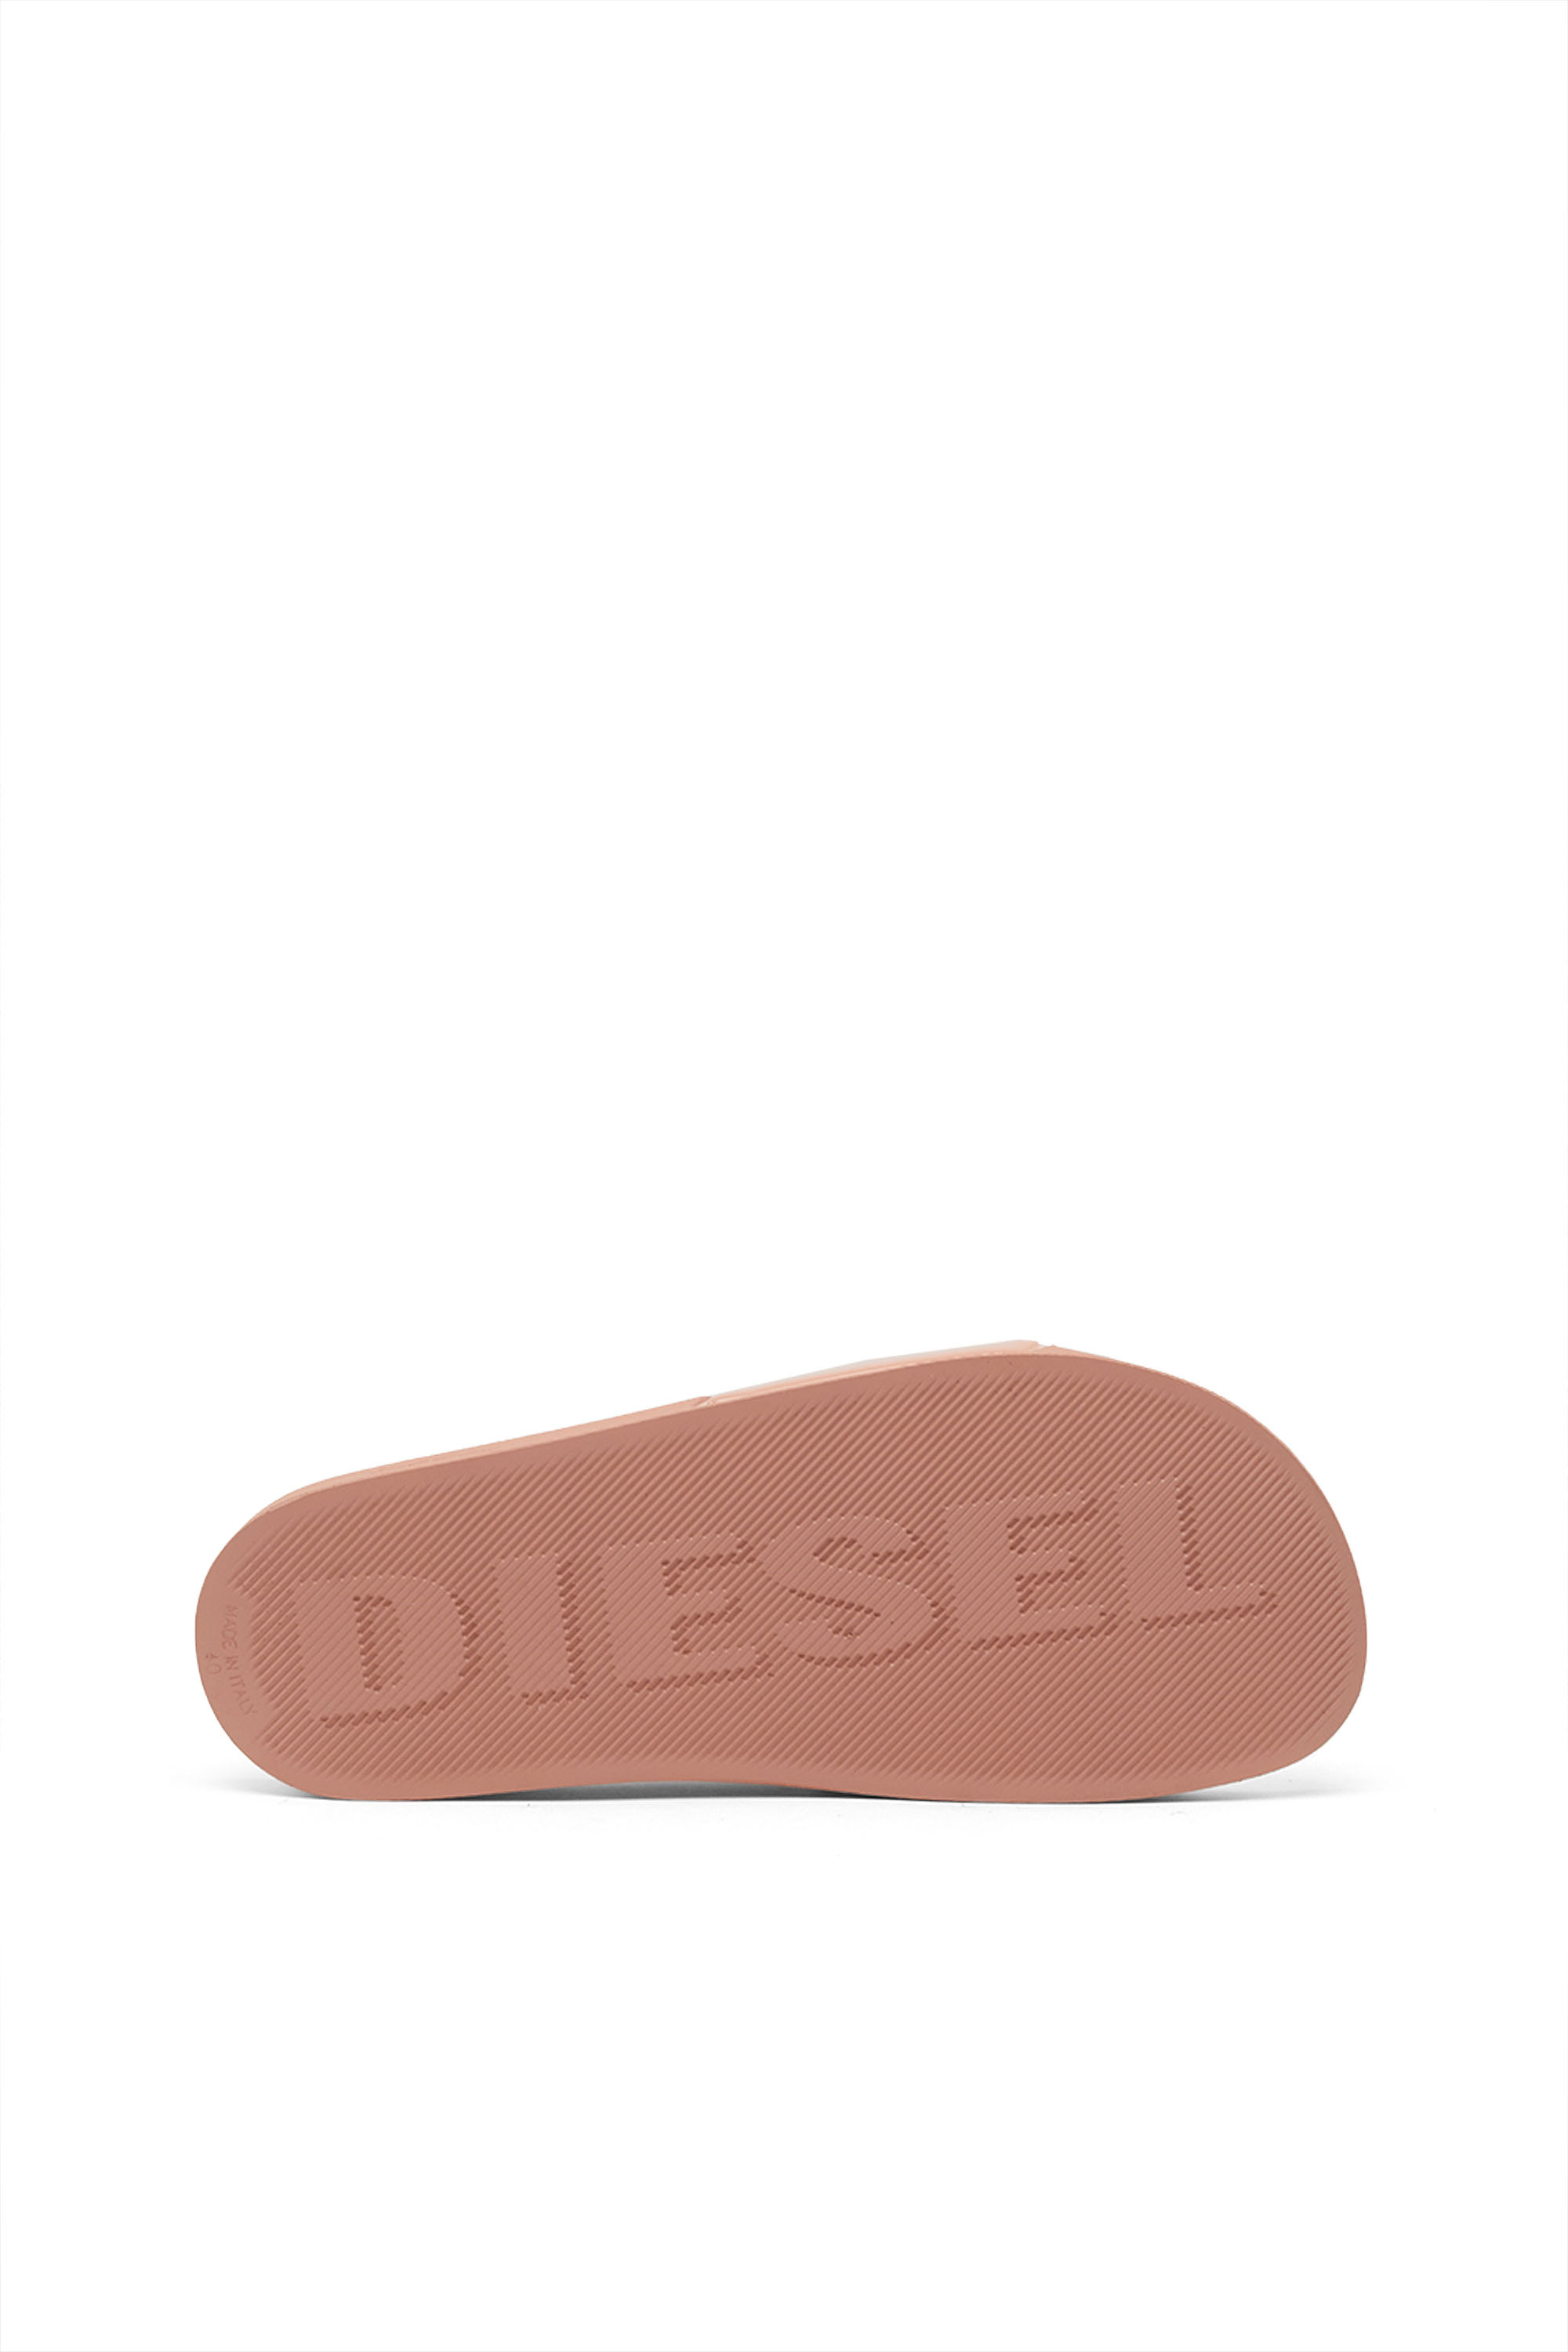 Diesel - SA-MAYEMI D W, Rose - Image 4